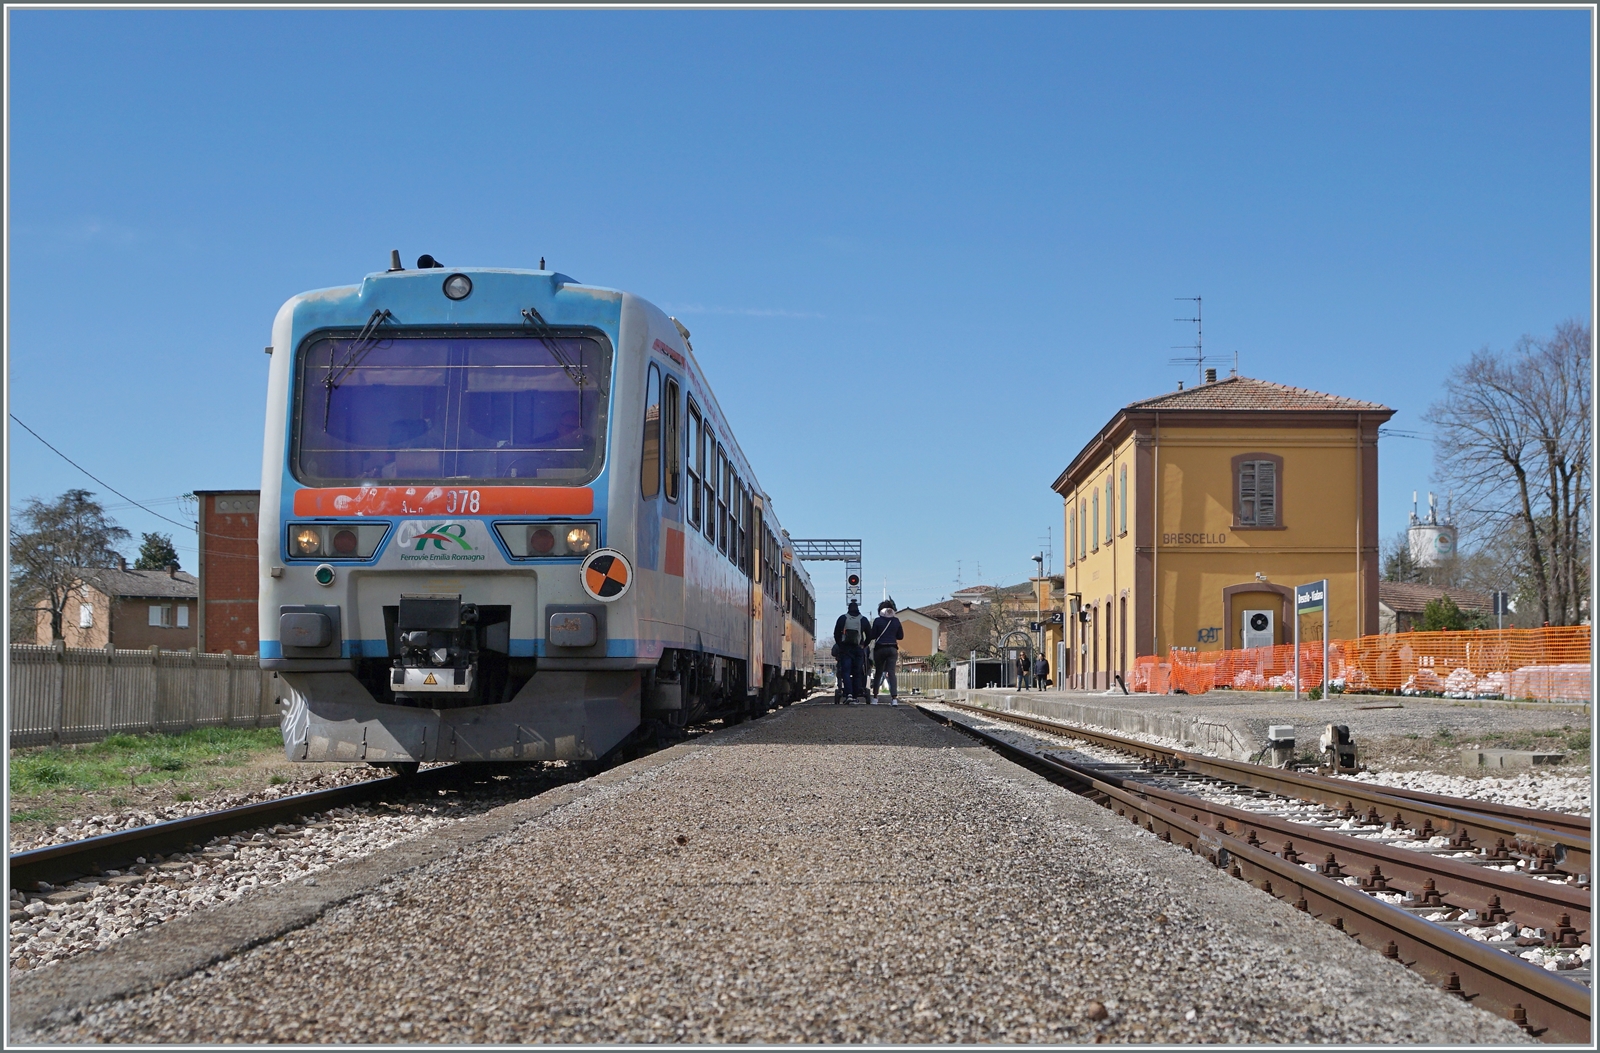 Die beiden Aln 663 078 und 077 verlassen nach einem kurzen Halt den Bahnhof Brescello-Viadana. Die beiden Triebzge sind als Trenitalia TPER Regionalzug 90322 von Parma nach Suzzara unterwegs. 
Die FER Triebwagen werden als Aln 663 gefhrt, unterscheiden sich aber doch von der Regelbaureihe.

15. Mrz 2023